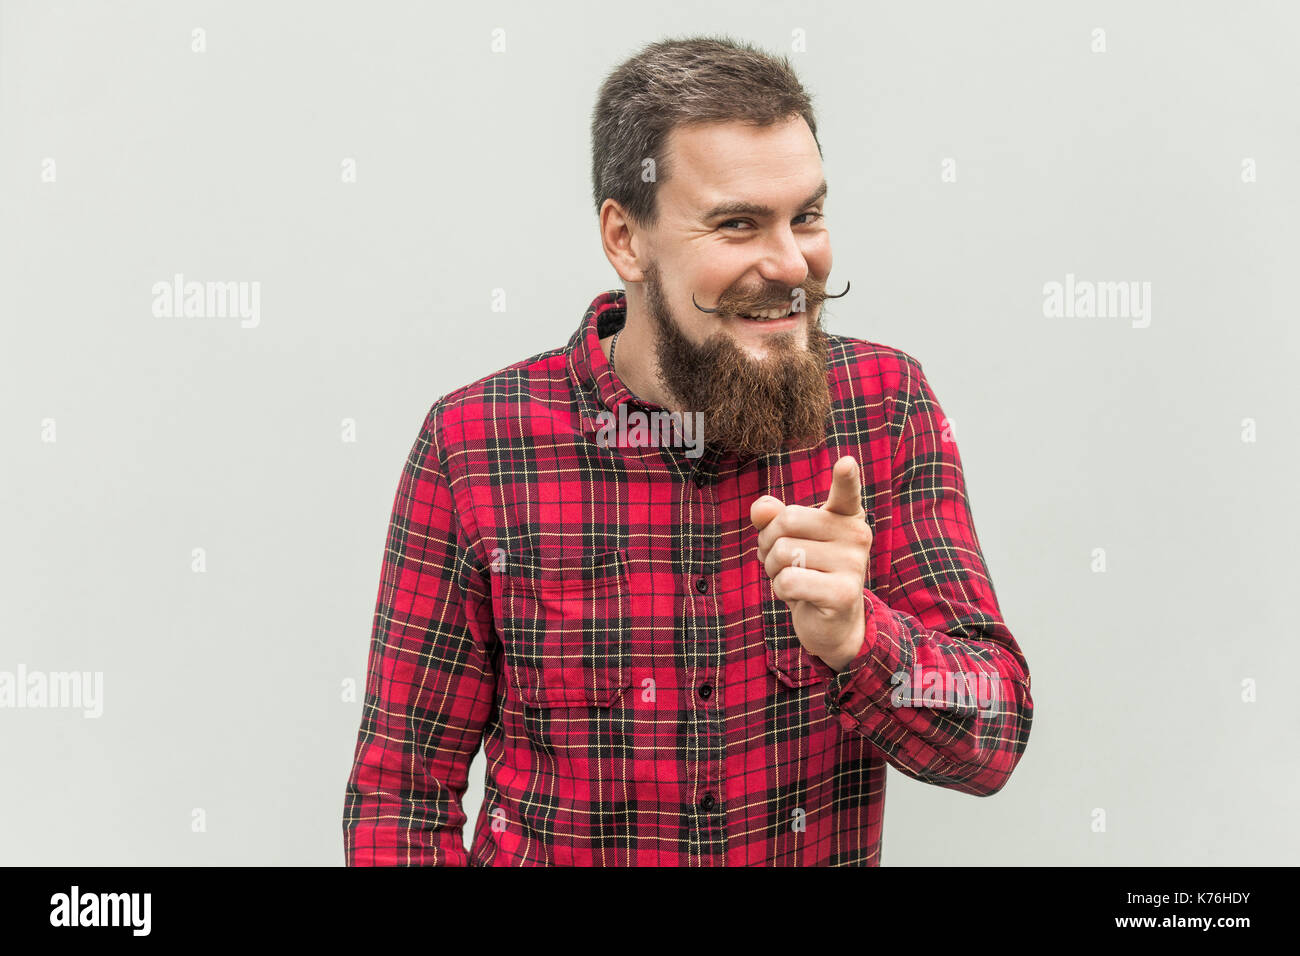 Honte de vous ! Homme barbu en chemise rouge face à l'appareil photo et sourire à pleines dents. isolé sur fond gris, studio shot Banque D'Images